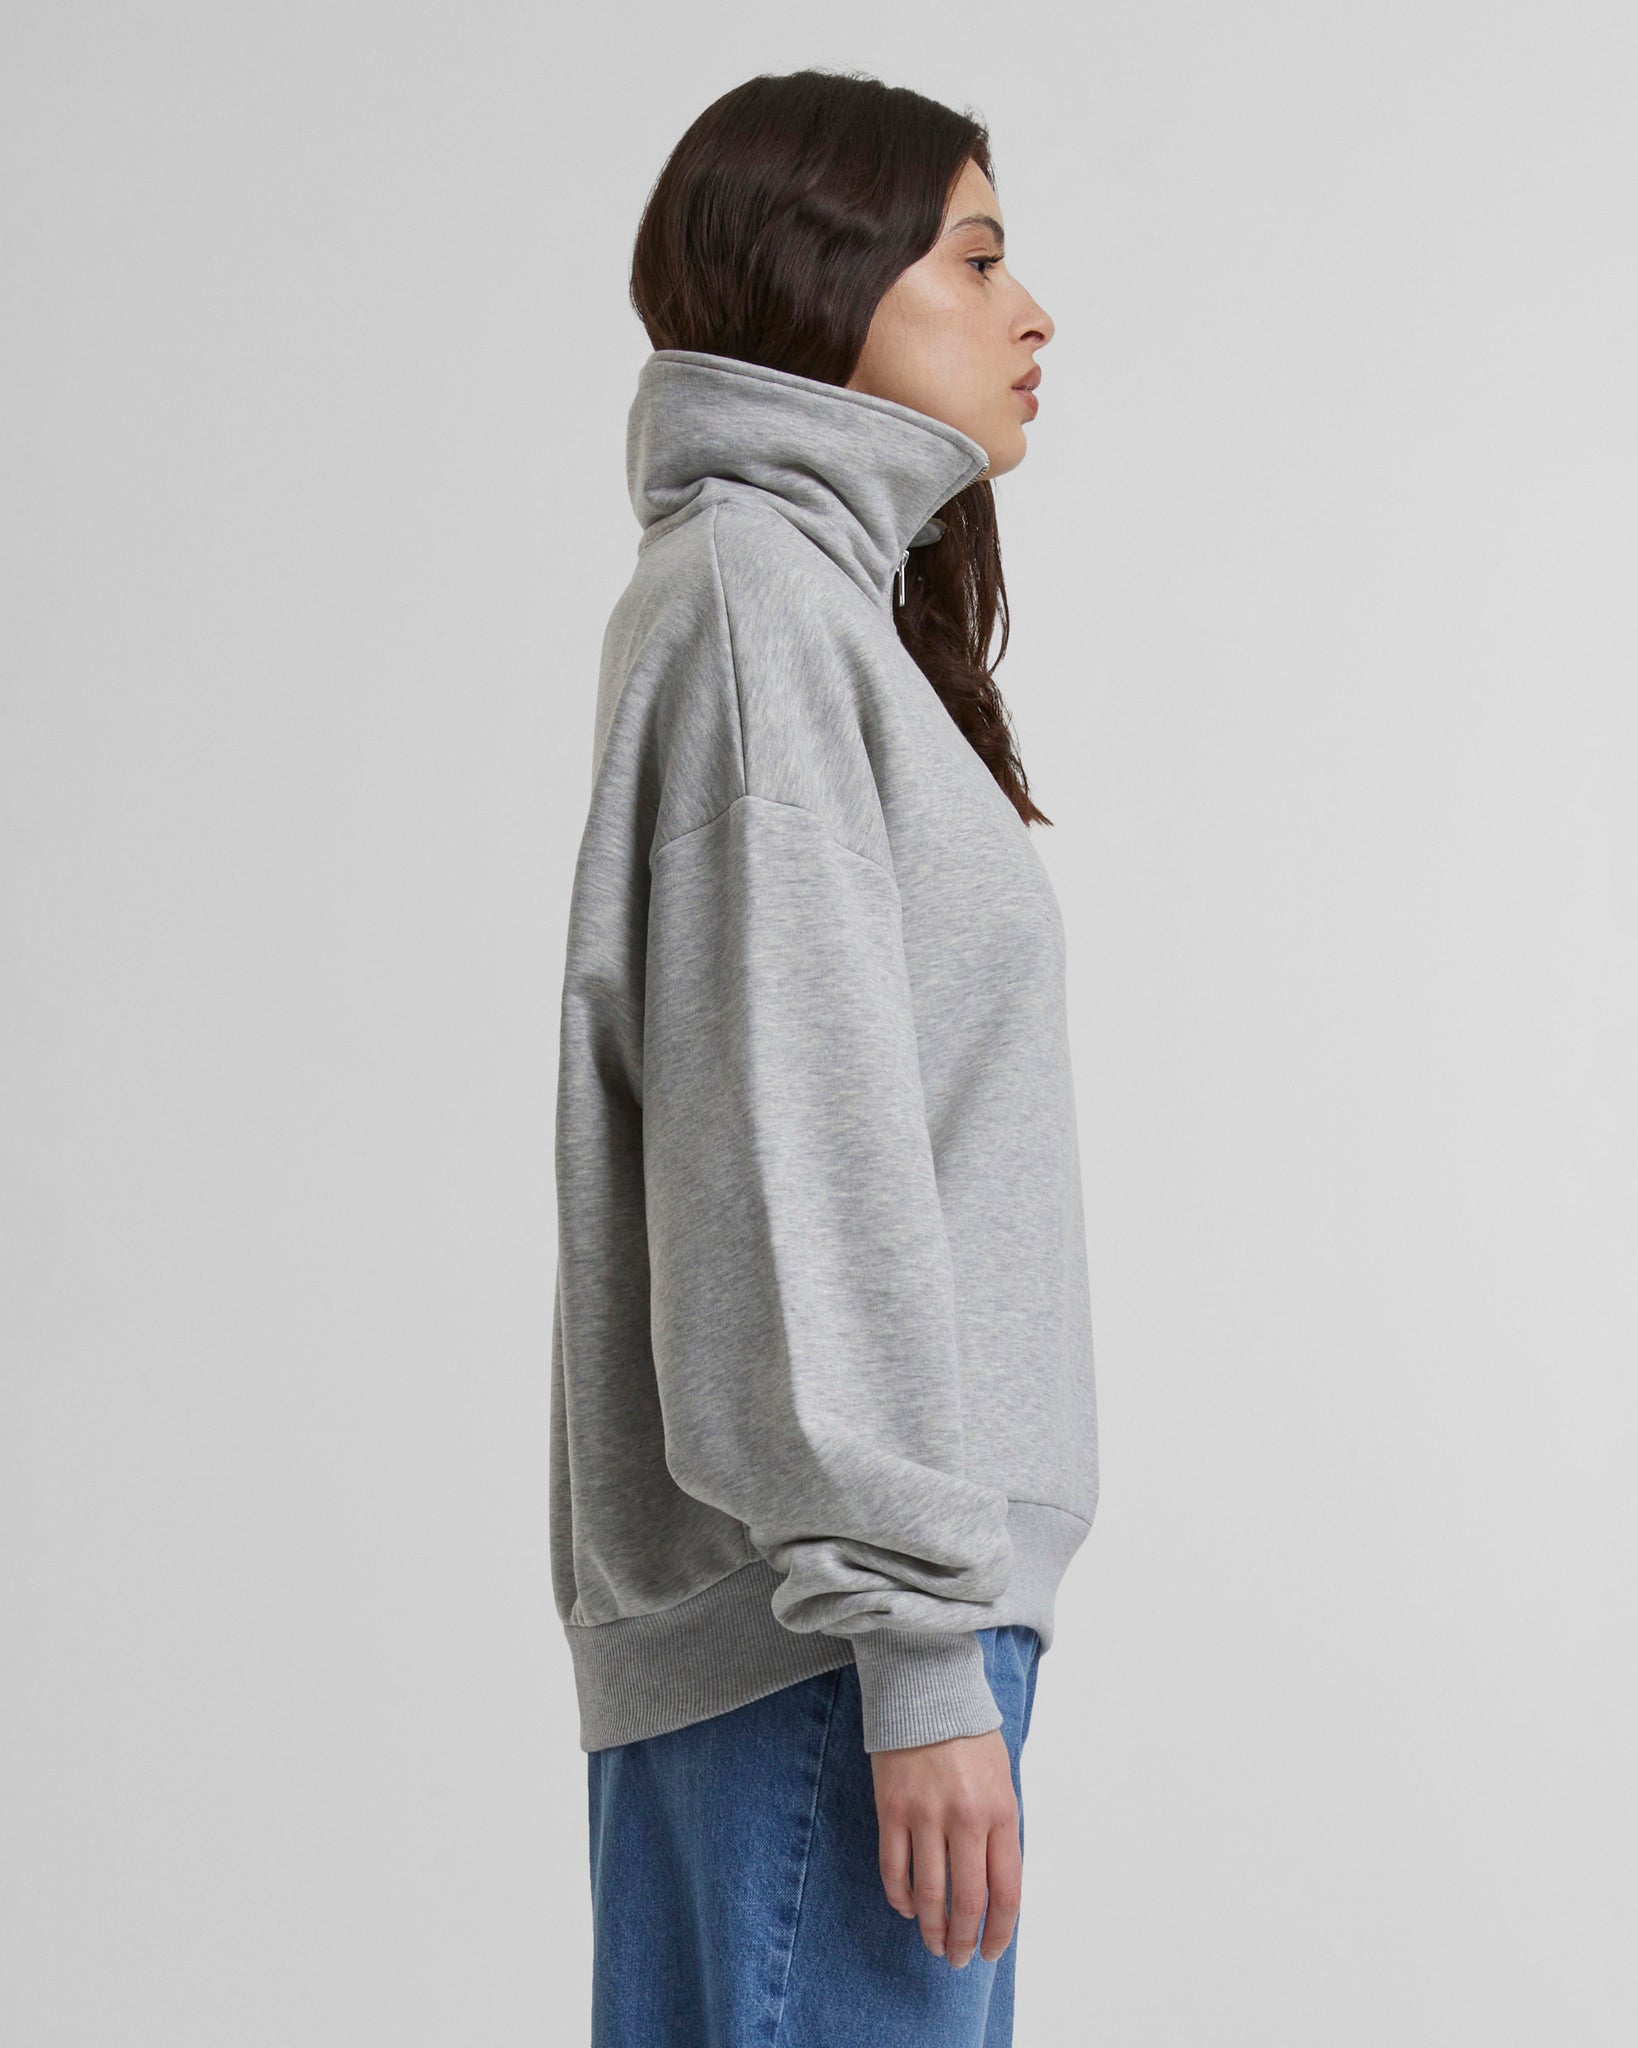 PB Garment Half-Zip Grey Melange